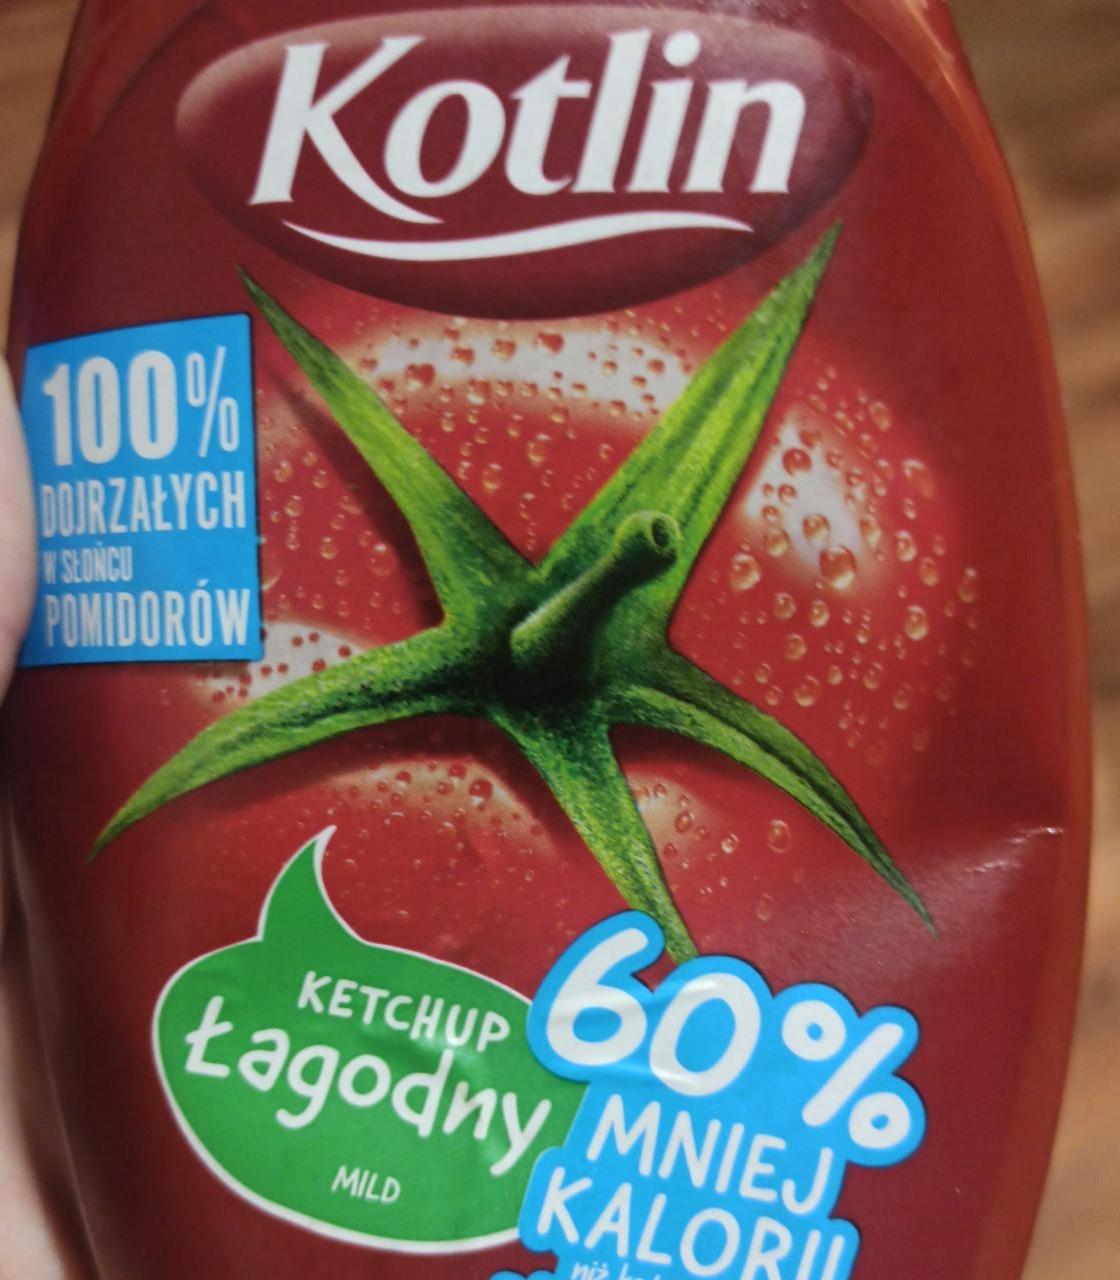 Fotografie - Kotlin ketchup lagodny 60% mniej kalorii